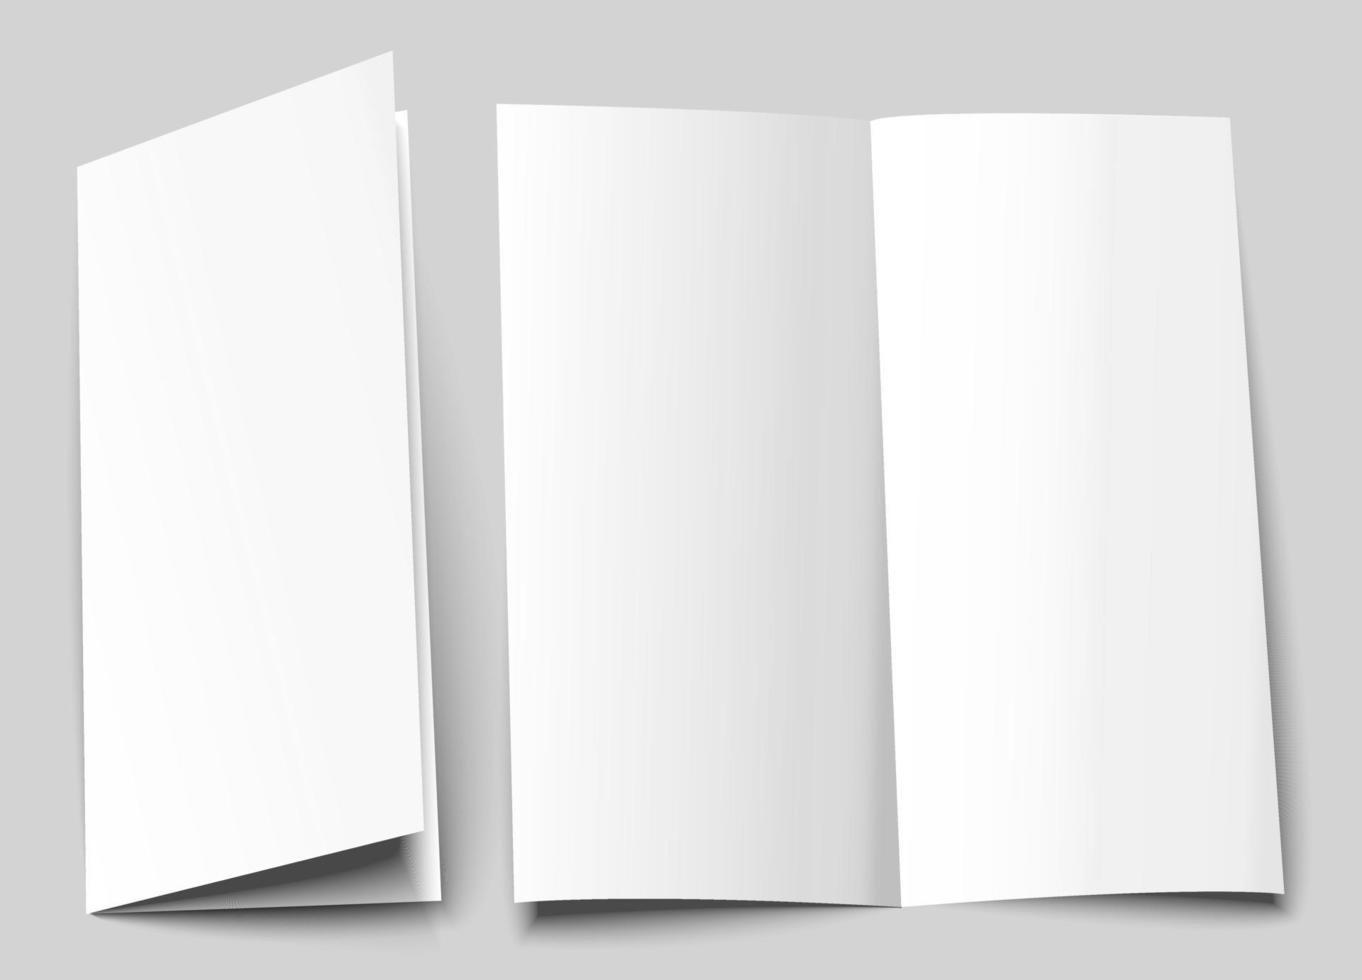 maquete de capa de brochura a6. a5 design de modelo em branco meia-dobra. bifold, panfleto de meia dobra vertical com espaço de cópia. ilustração em vetor 3D.